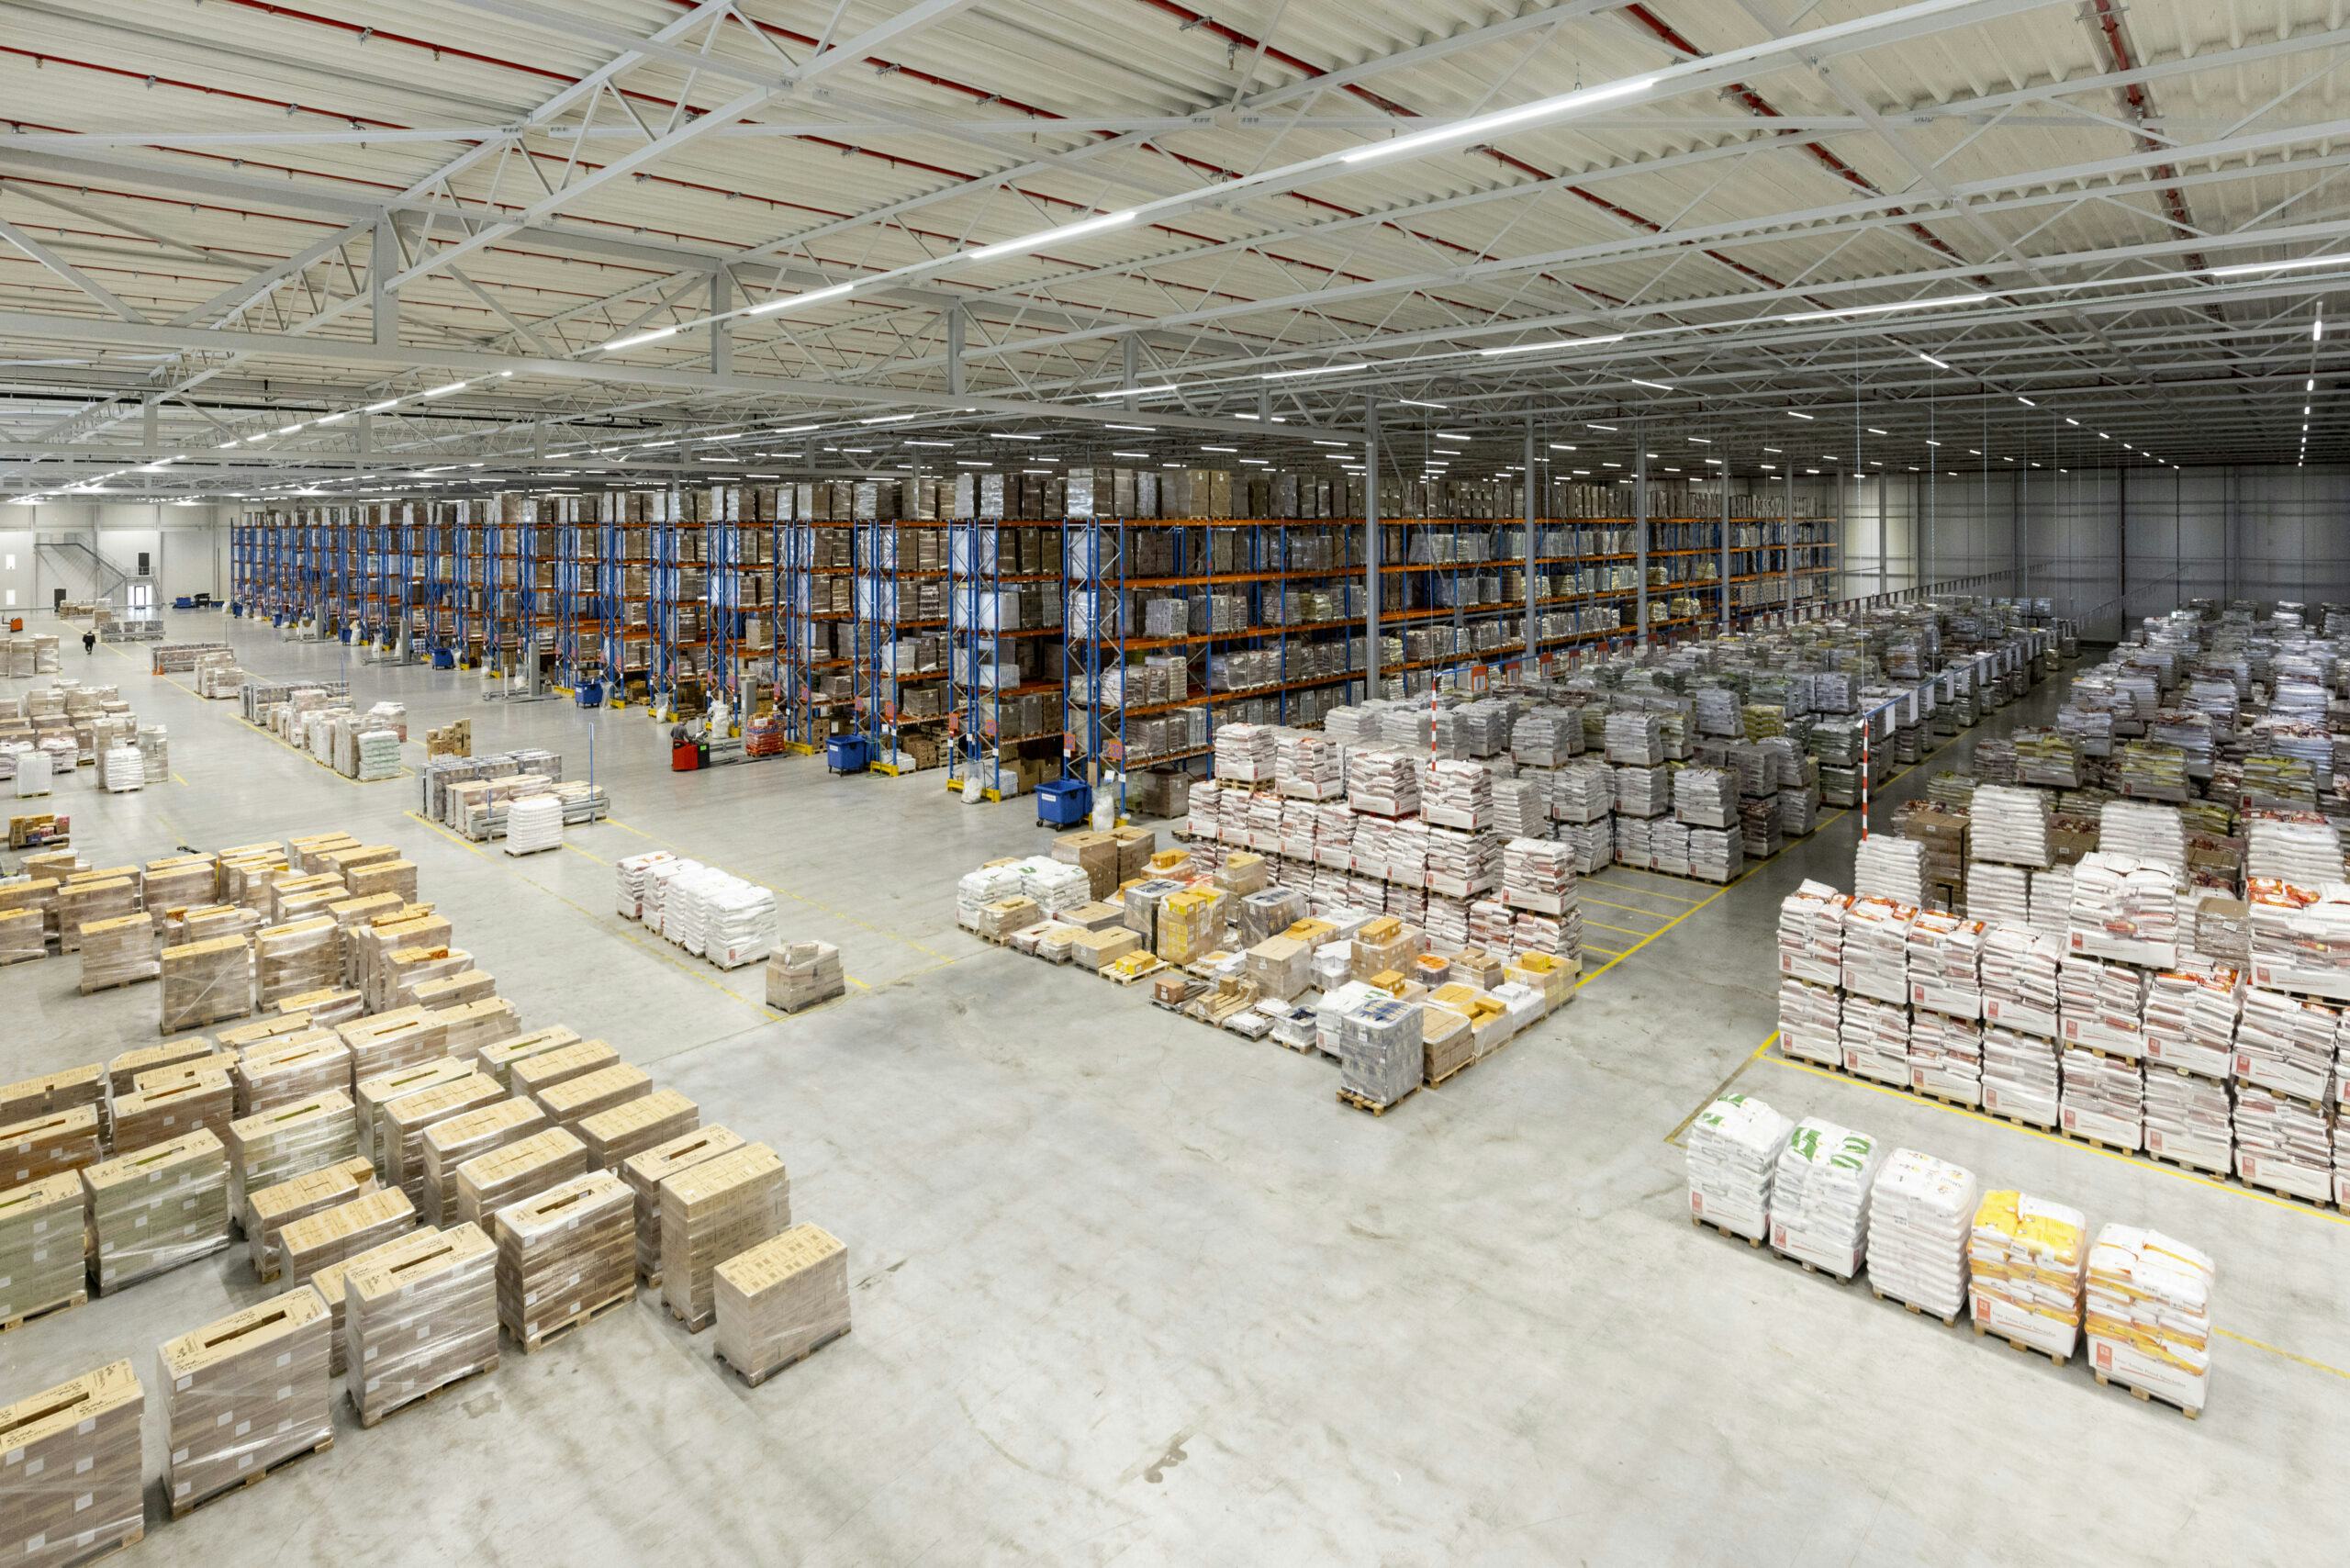 In de warehouse in Oss liggen miljoenen kilo’s Aziatische levensmiddelen opgeslagen.